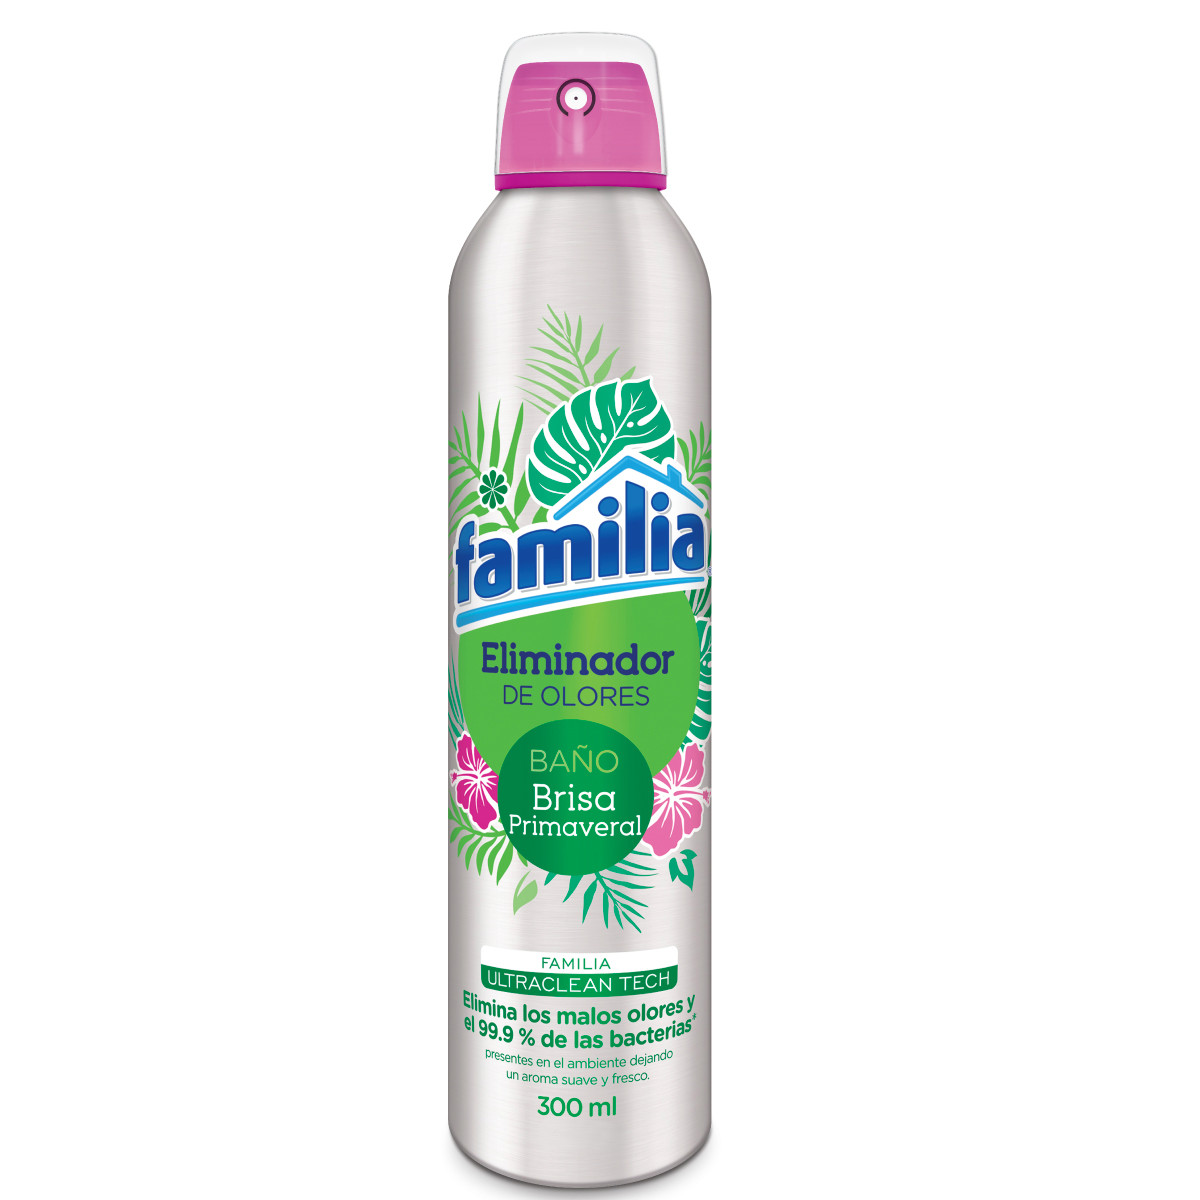 Imagen Inactiva Eliminador de olores Familia baño brisa x 300 ml 1